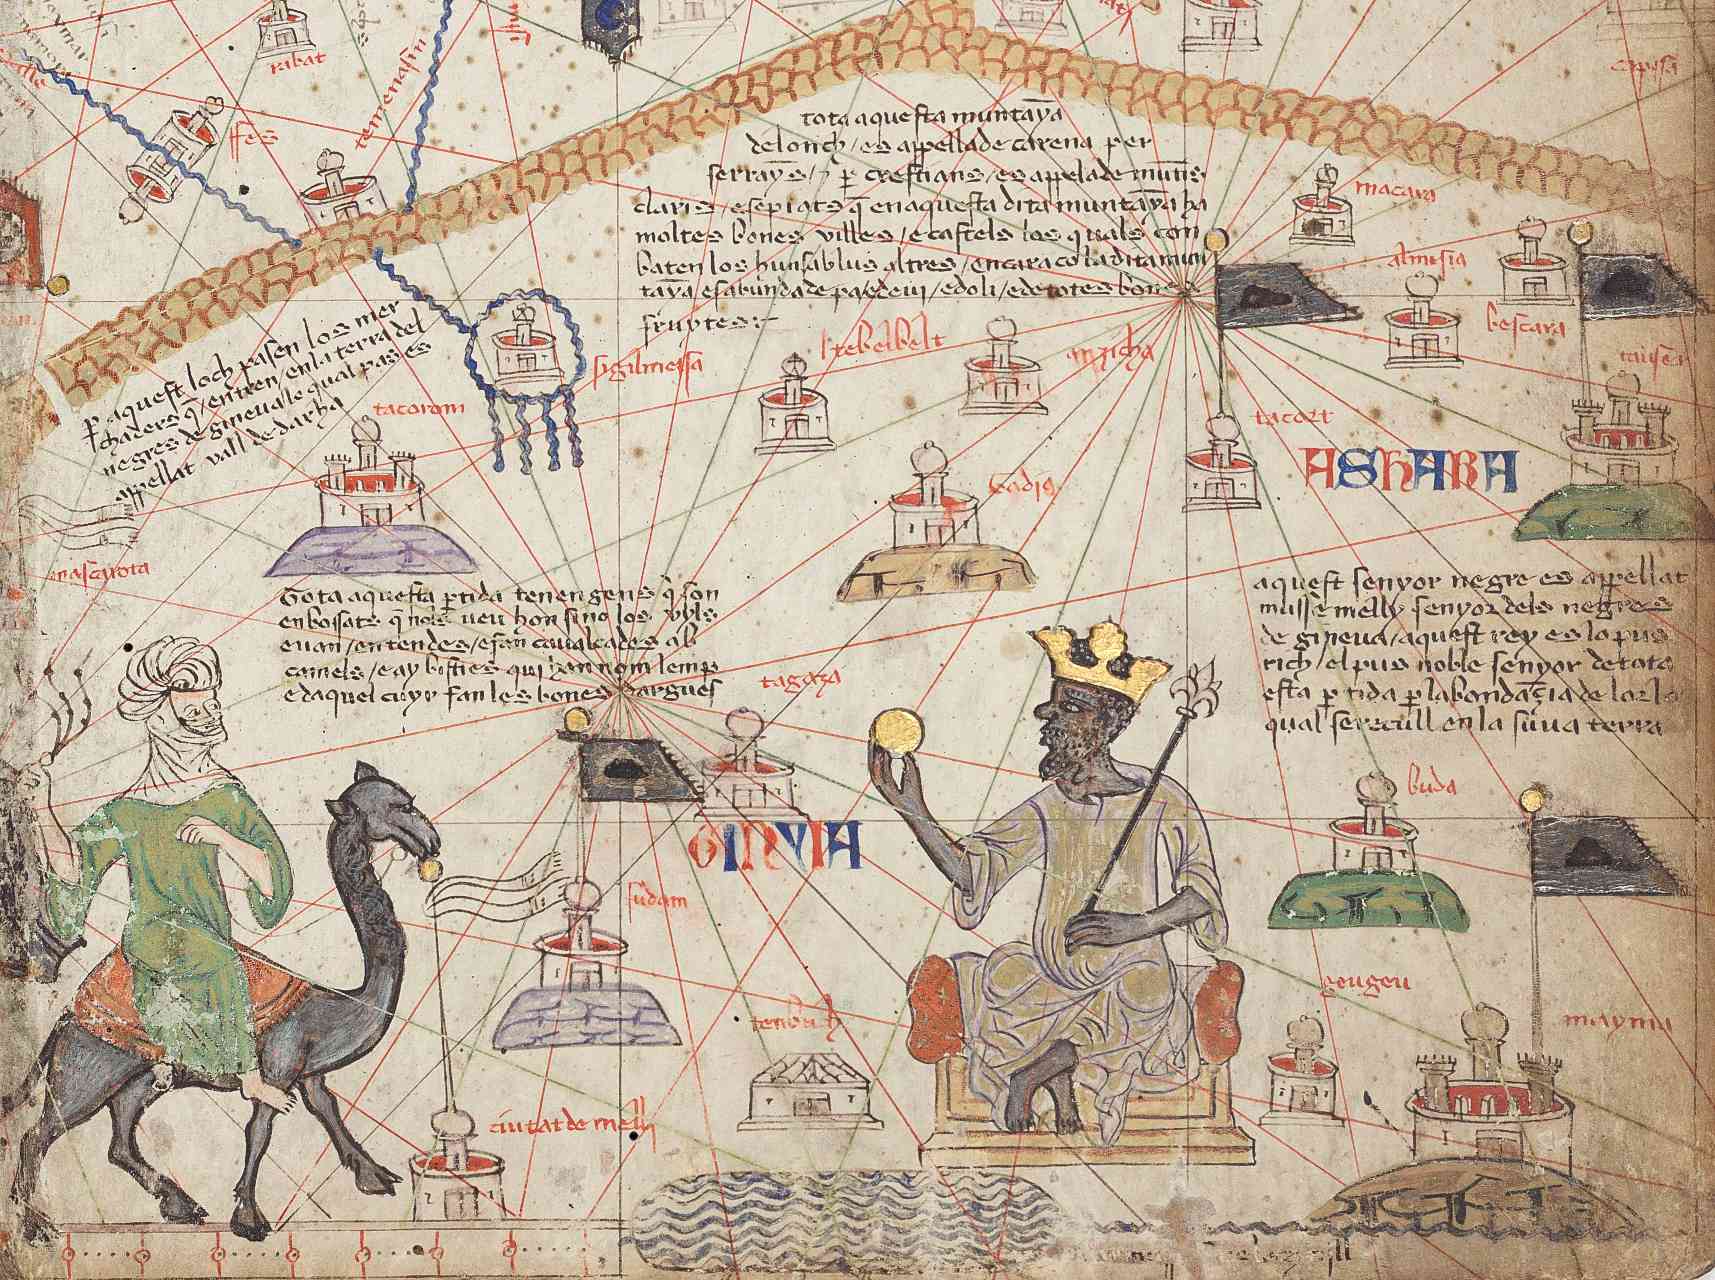 ព័ត៌មានលម្អិតពី Catalan Atlas Sheet 6 បង្ហាញពីសាហារ៉ាខាងលិច។ ភ្នំ Atlas ស្ថិតនៅលើកំពូល និងទន្លេនីហ្សេនៅខាងក្រោម។ Mansa Musa ត្រូវបានបង្ហាញថាអង្គុយនៅលើបល្ល័ង្កមួយហើយកាន់កាក់មាស។